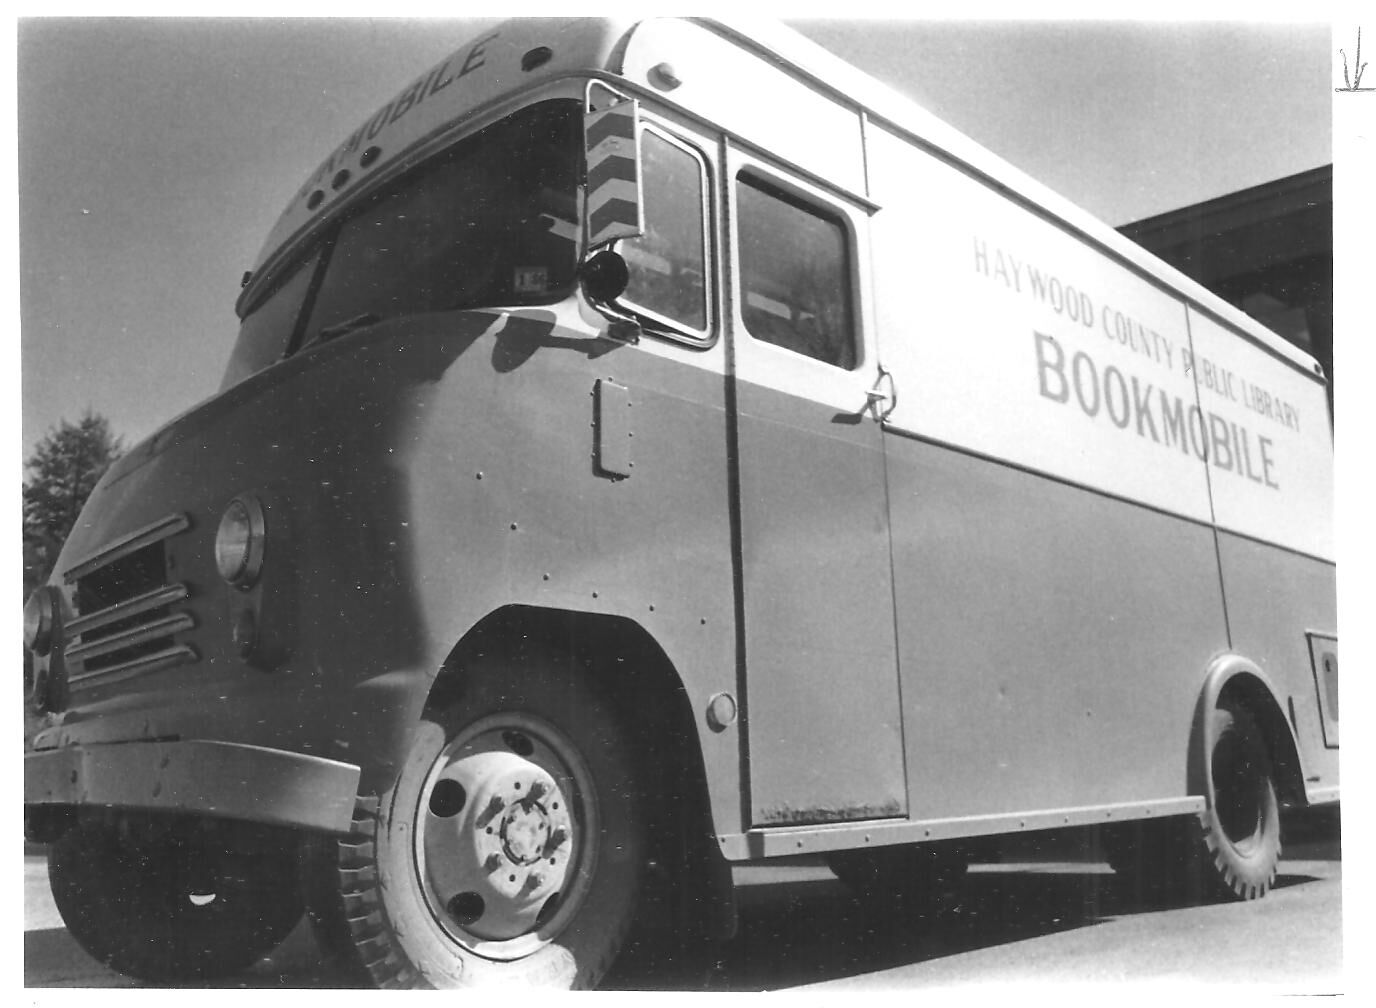 Haywood Bookmobile